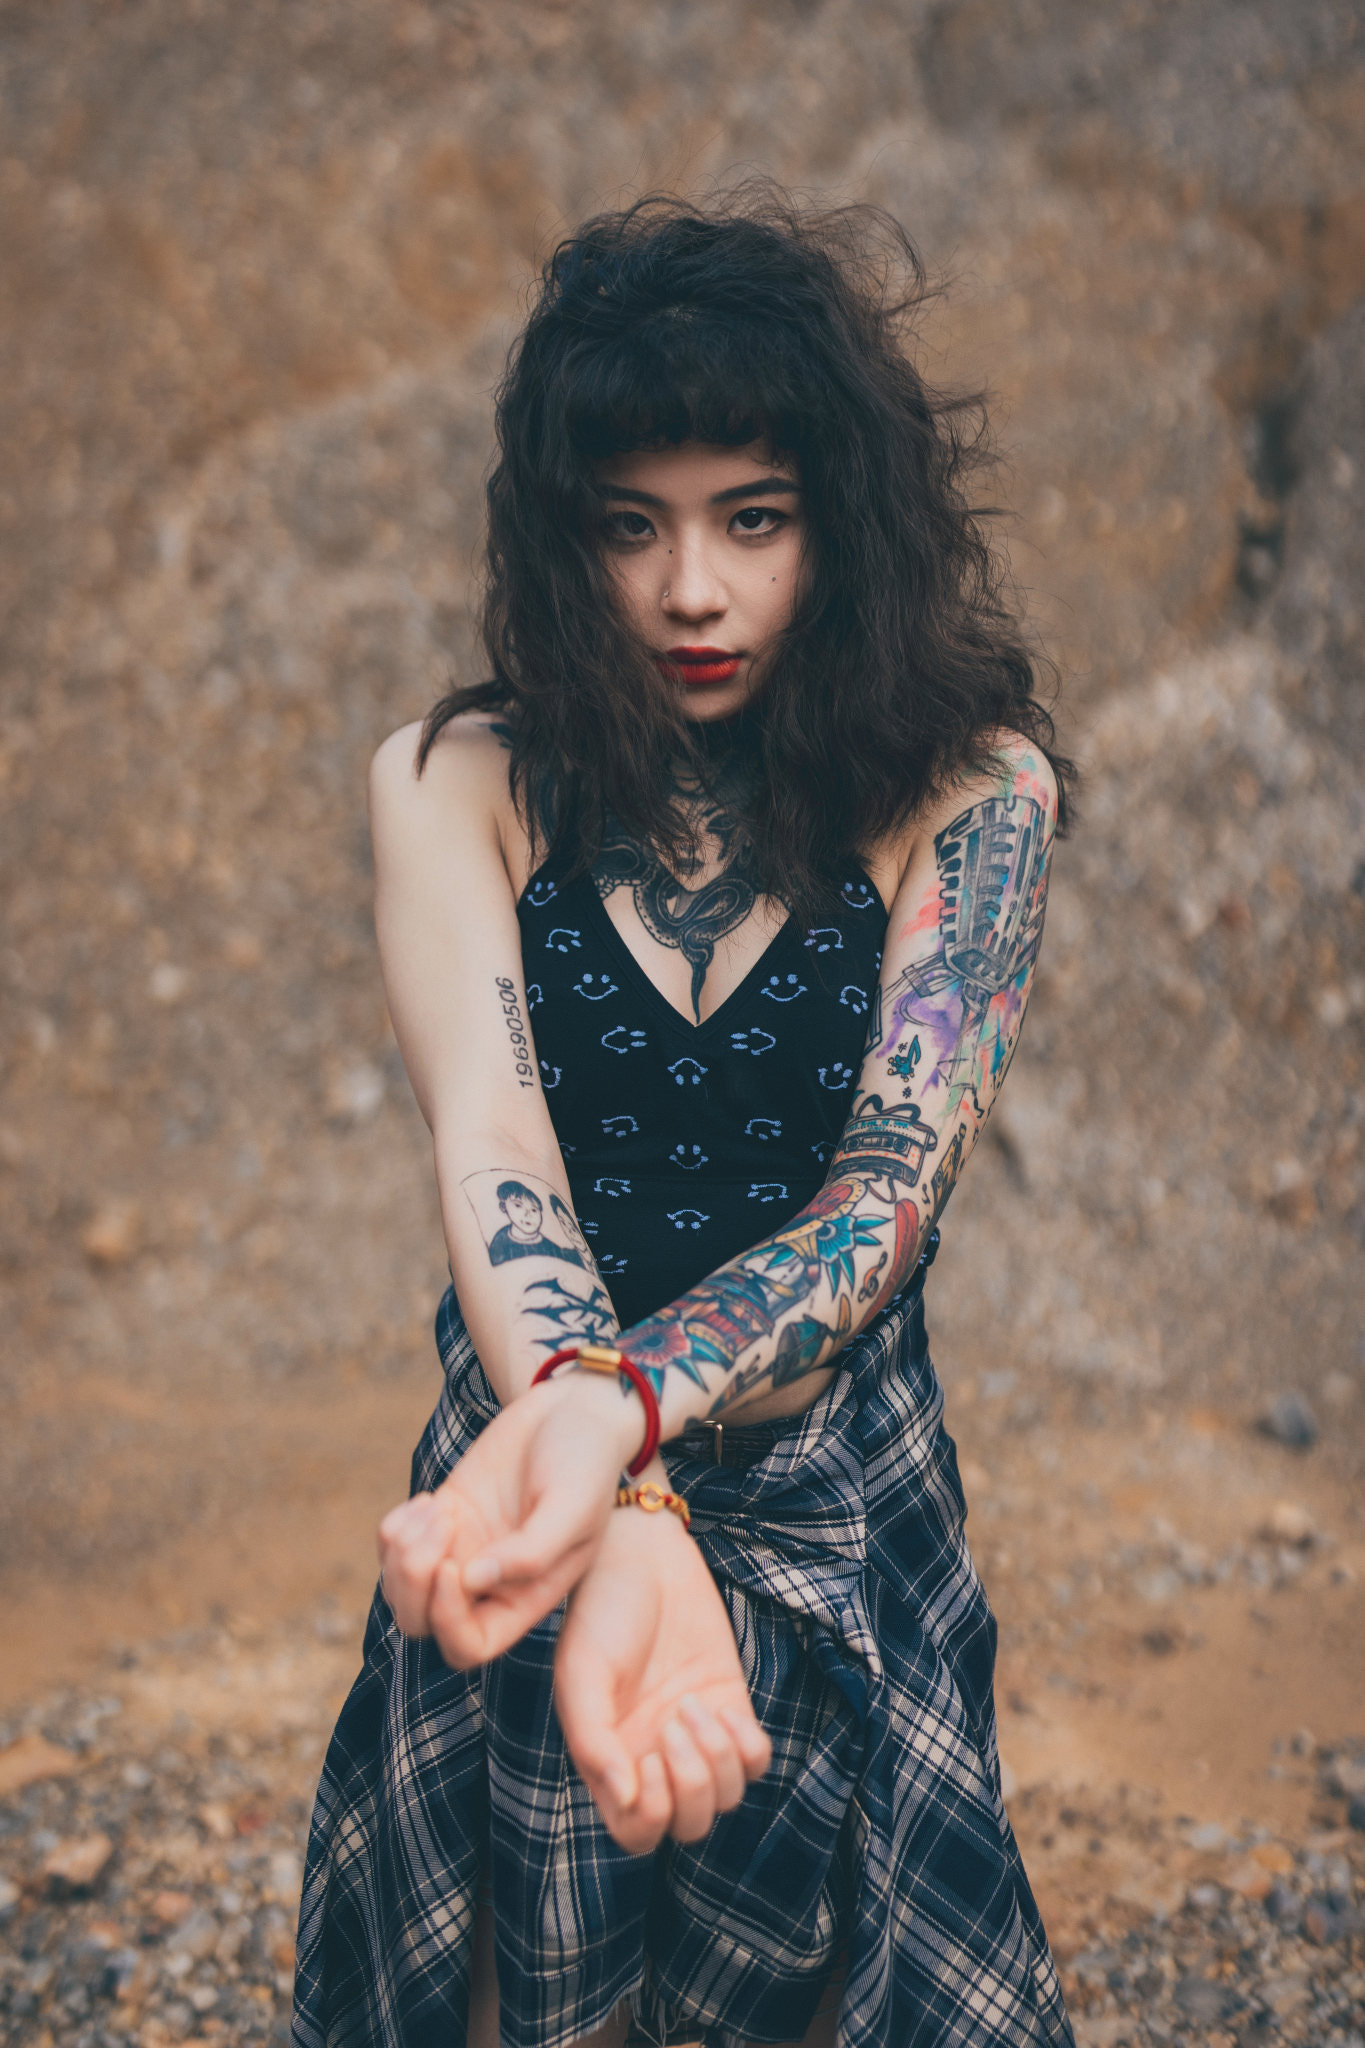 Qin Xiaoqiang Women Asian Messy Hair Tattoo Outdoors 1365x2048